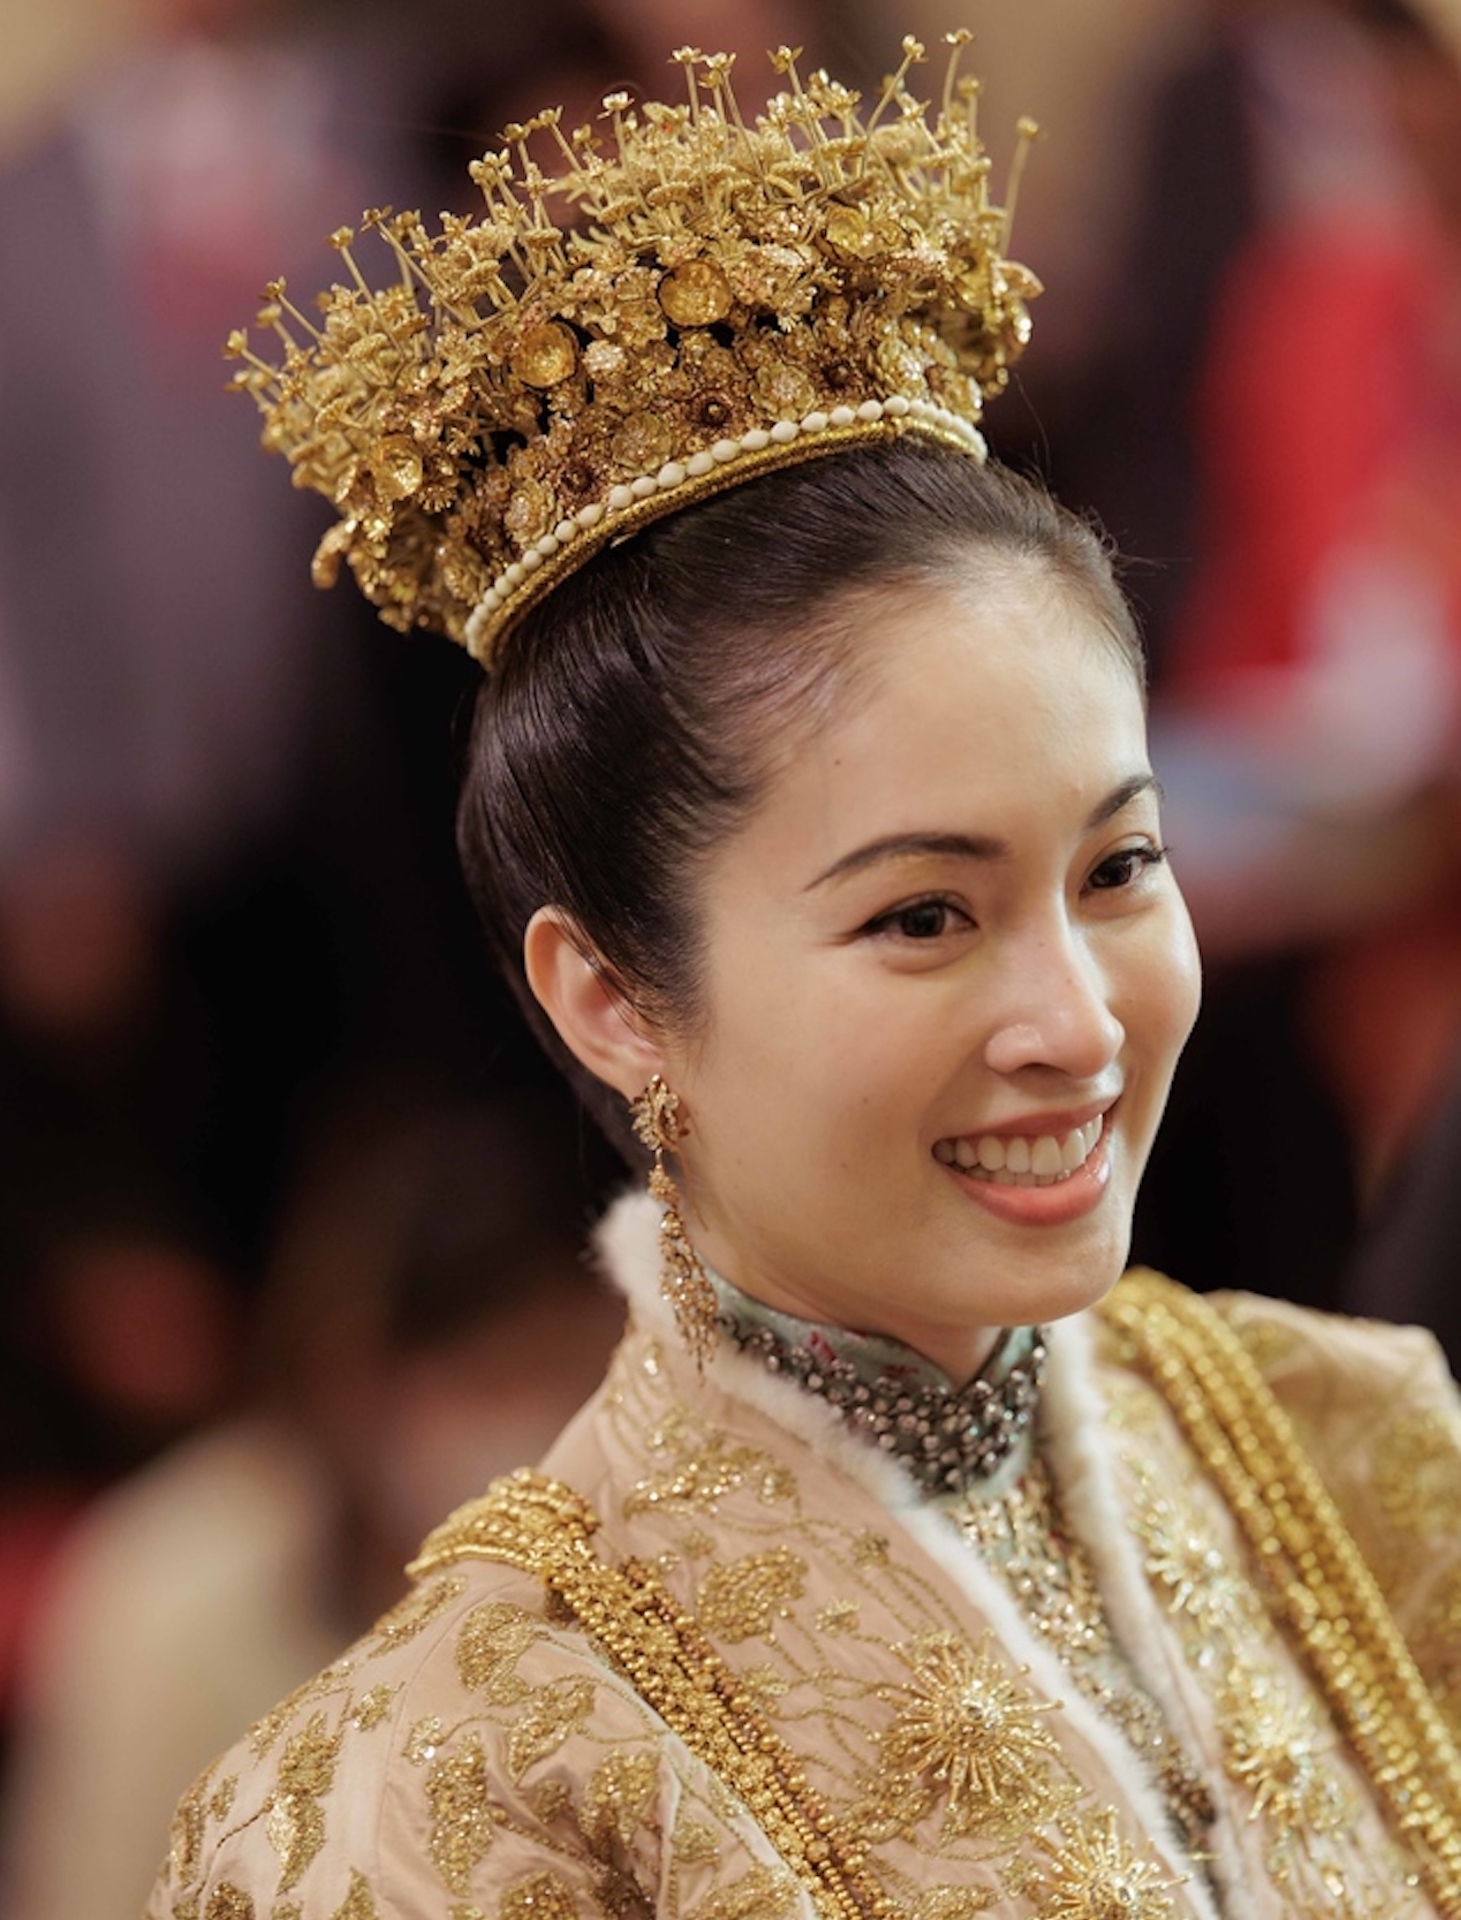 Hôn lễ truyền thống của 'hoa hậu chuyển giới đẹp nhất Thái Lan' với chồng doanh nhân - Ảnh 7.